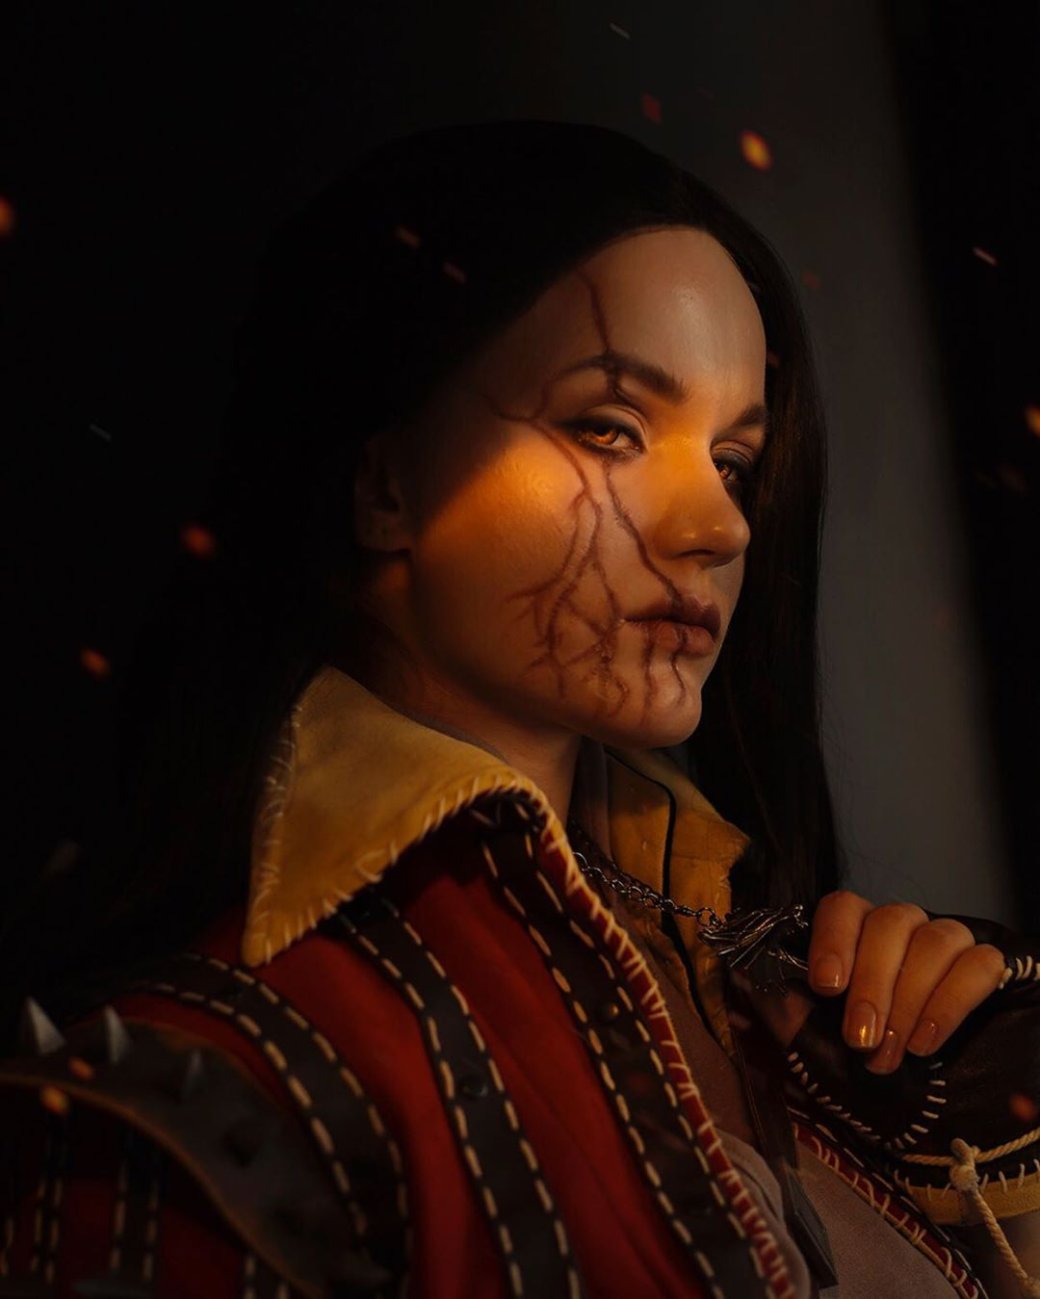 Галерея Россиянка предстала в образе Эскеля из «Ведьмака». Косплей оценила CD Projekt RED - 3 фото